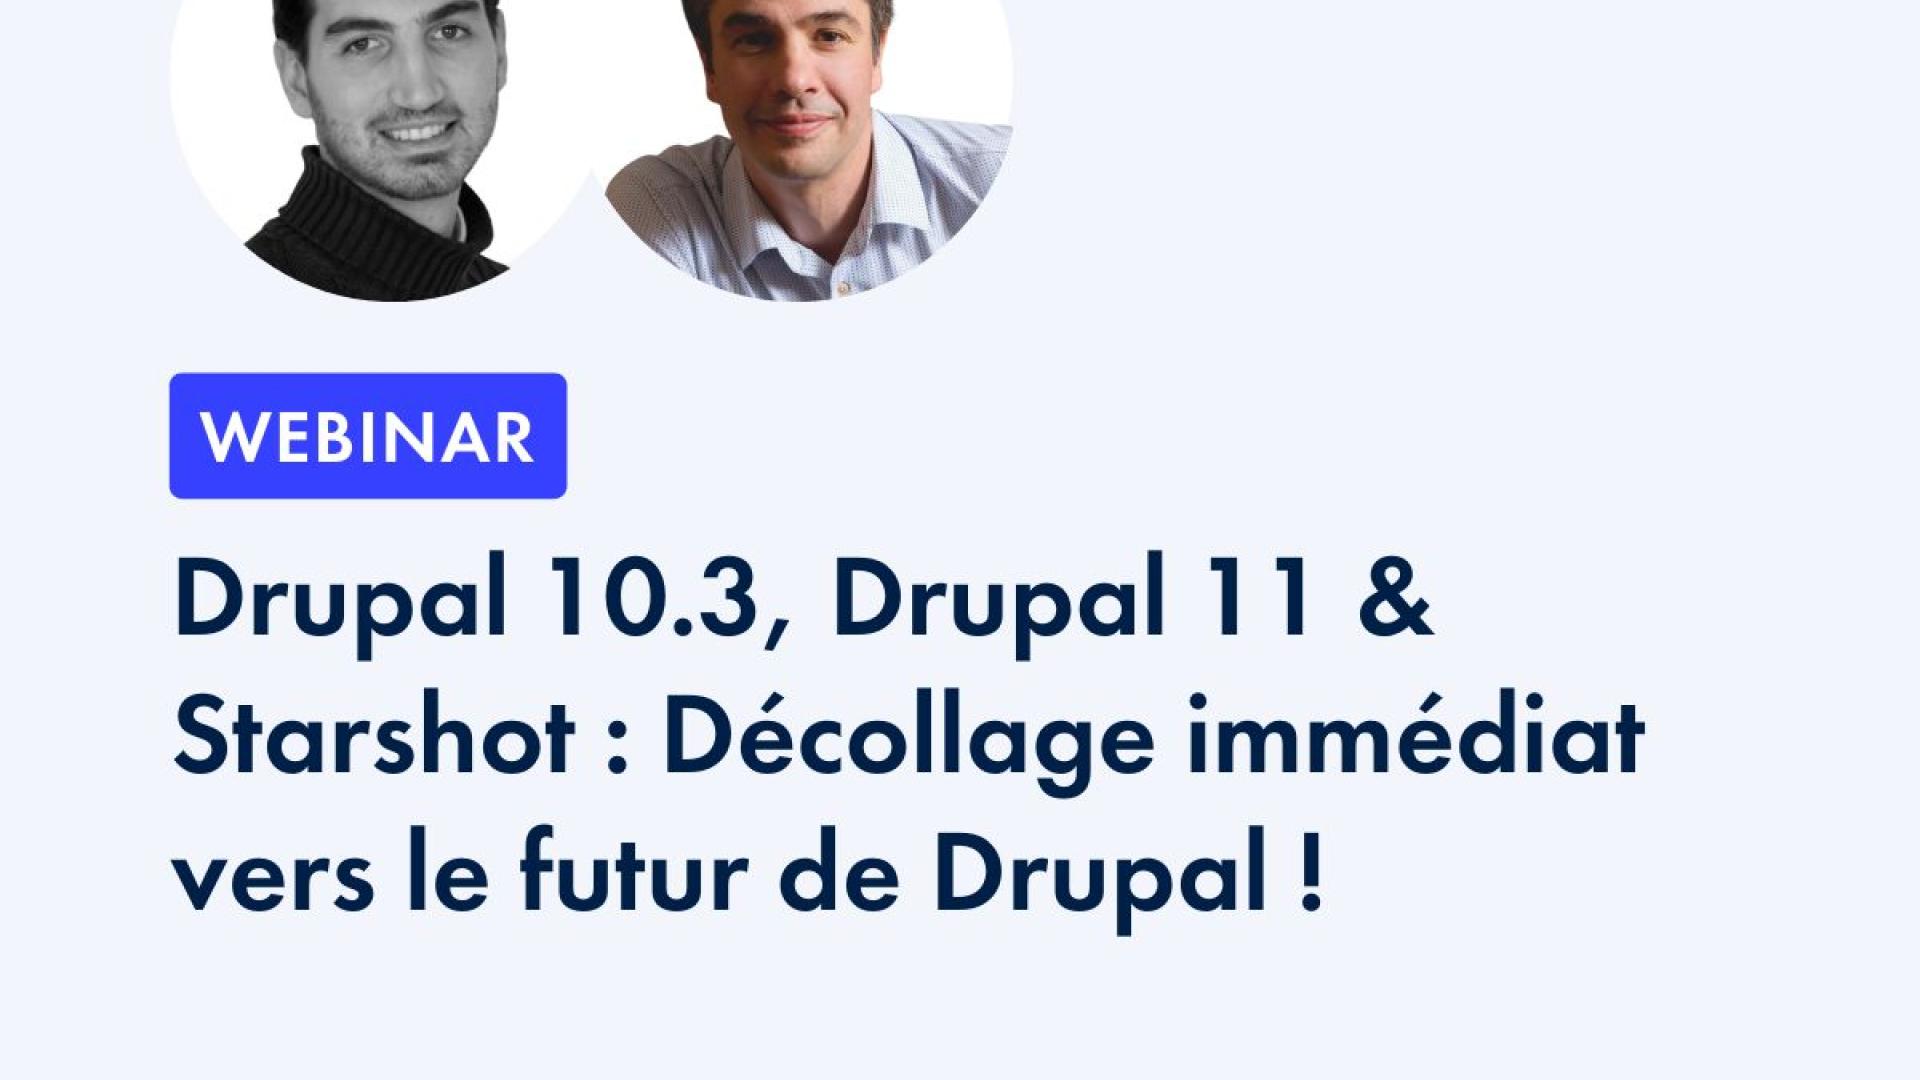 Drupal 10.3, Drupal 11 & Starshot: Décollage immédiat vers le futur de Drupal!